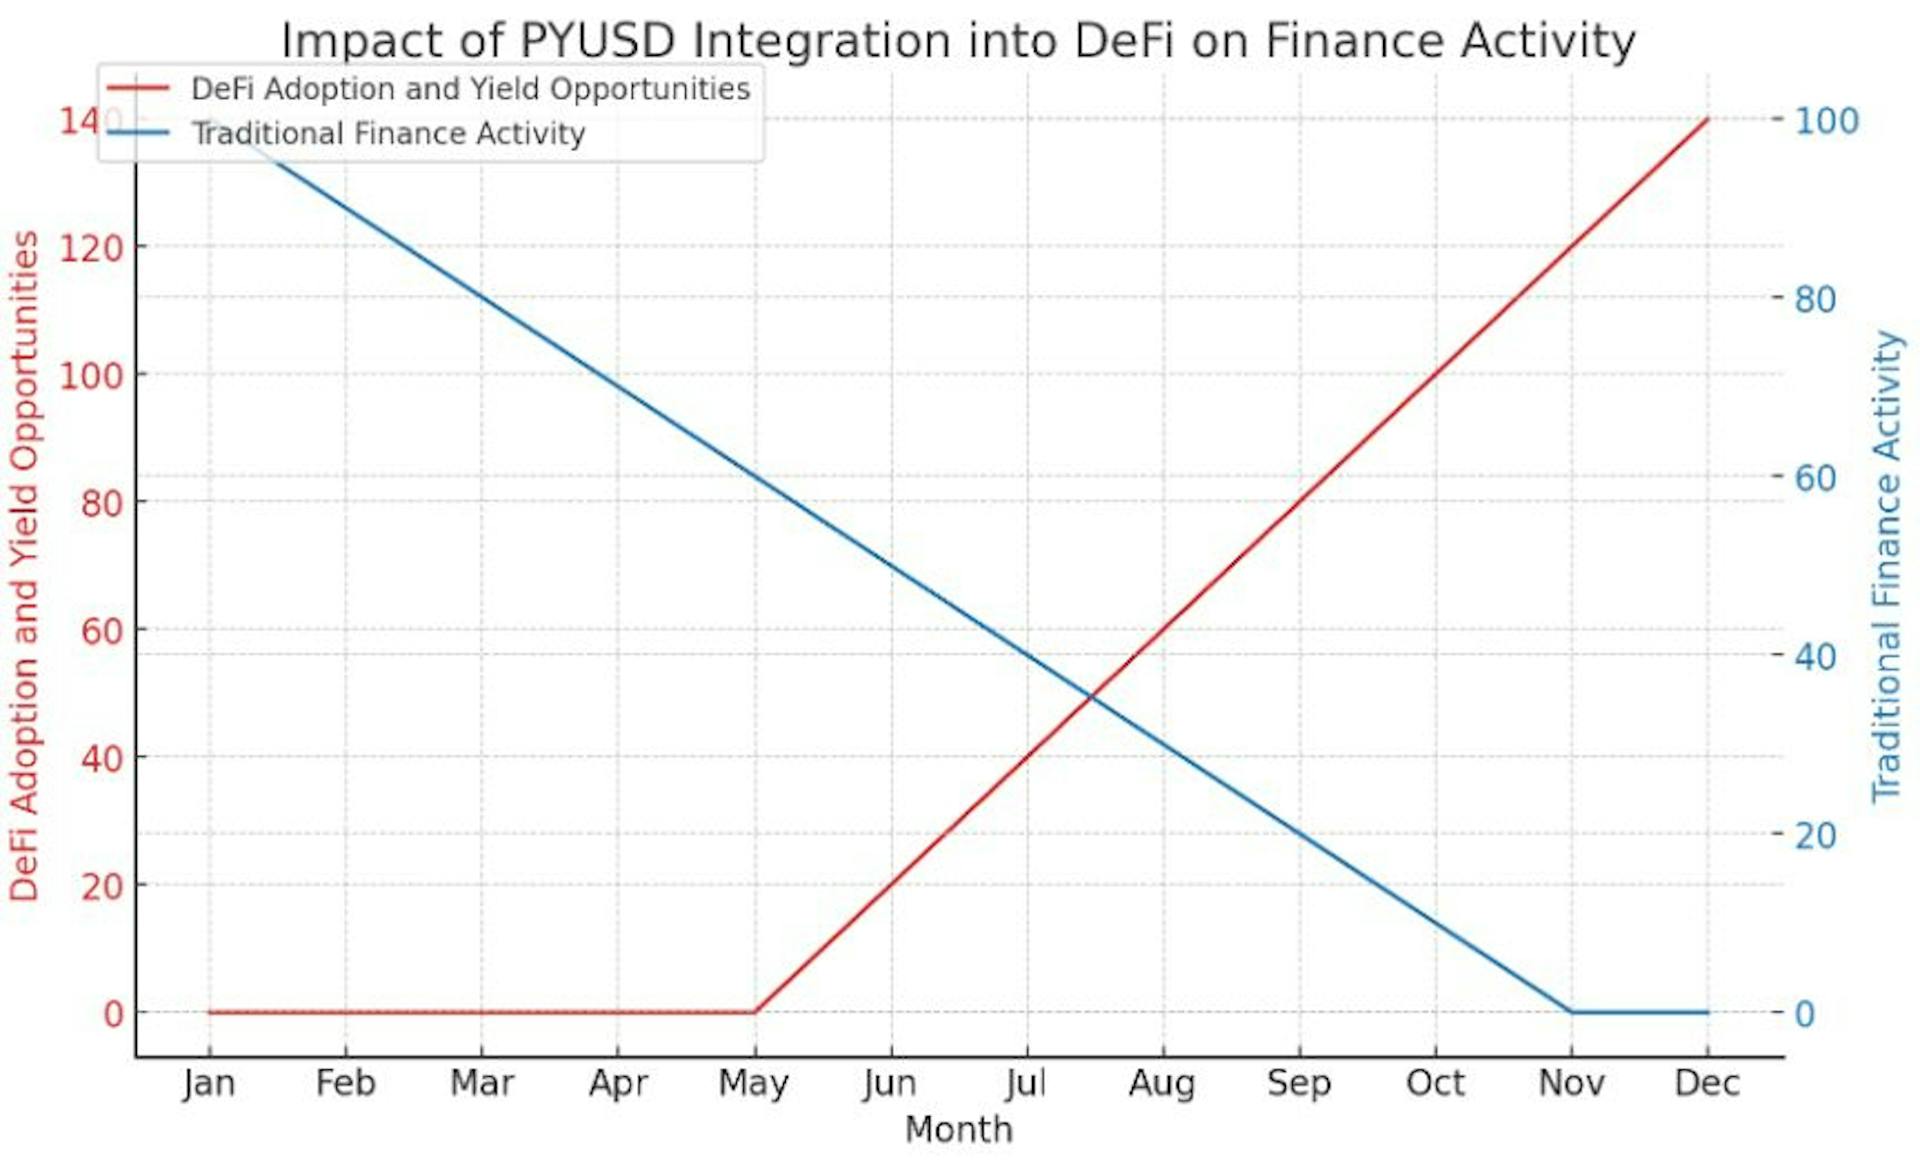 El gráfico visualiza el impacto hipotético de la integración de PYUSD en el ecosistema DeFi, mostrando un aumento significativo en la adopción de DeFi y oportunidades de rendimiento a lo largo del tiempo.